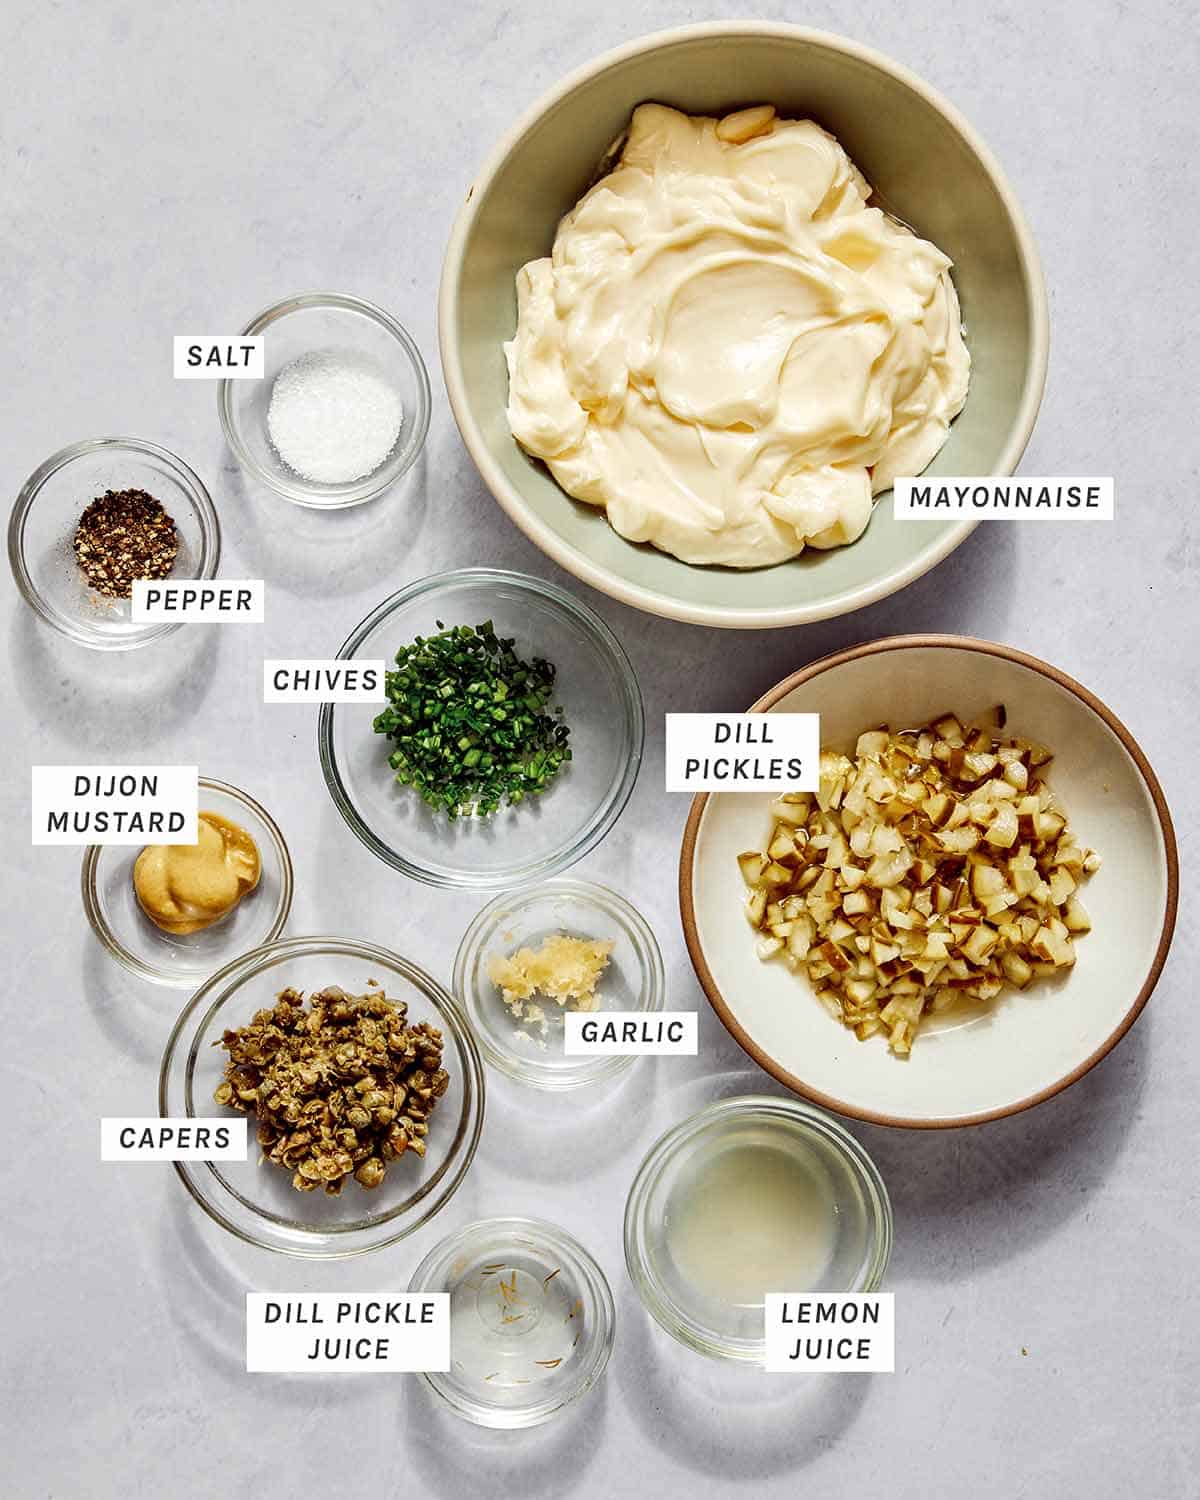 Ingredients to make tartar sauce. 